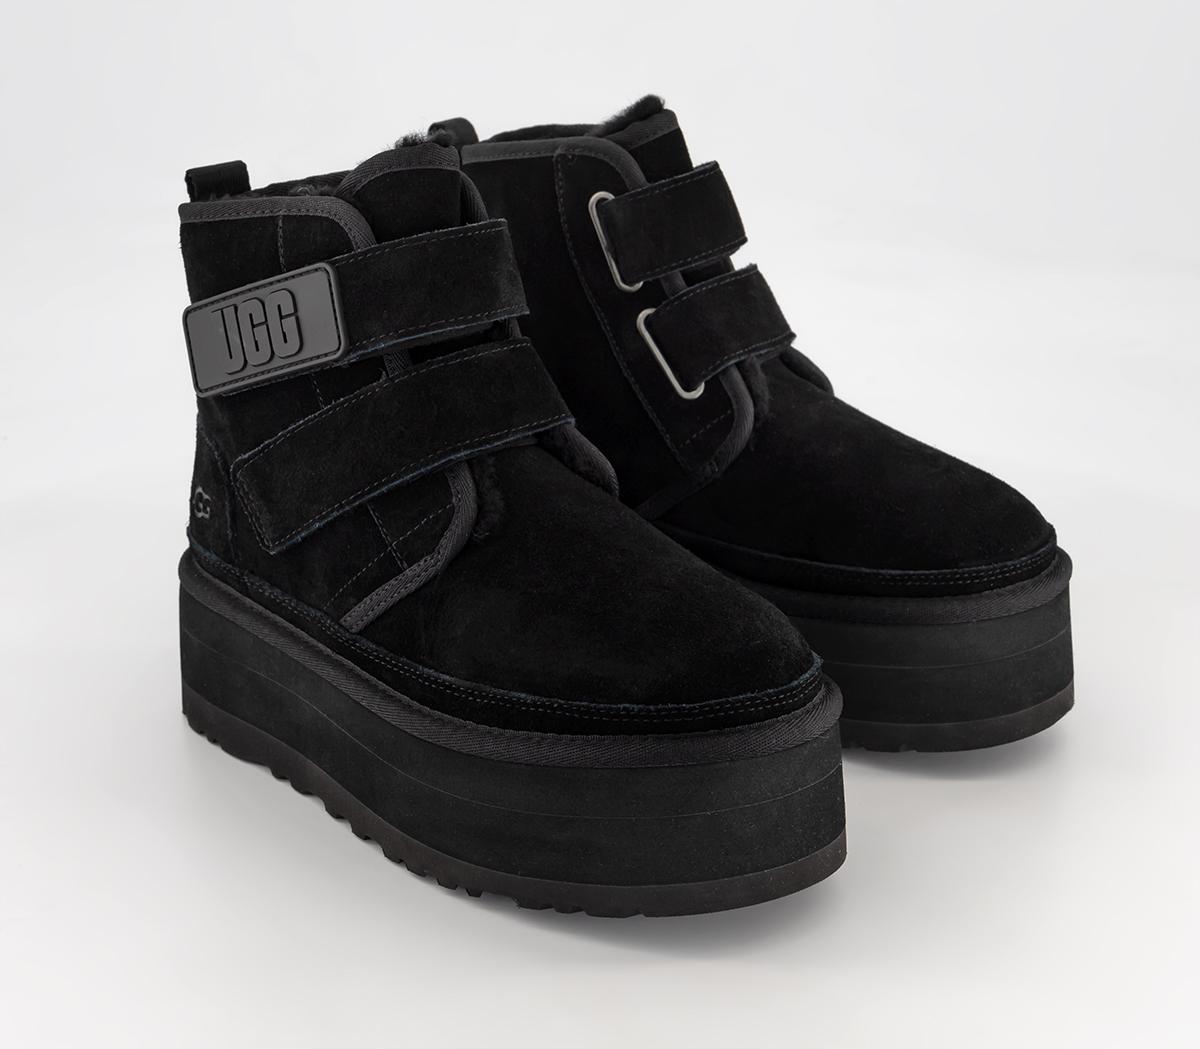 UGG Neumel Platform Strap Boots Black - Women's Ankle Boots